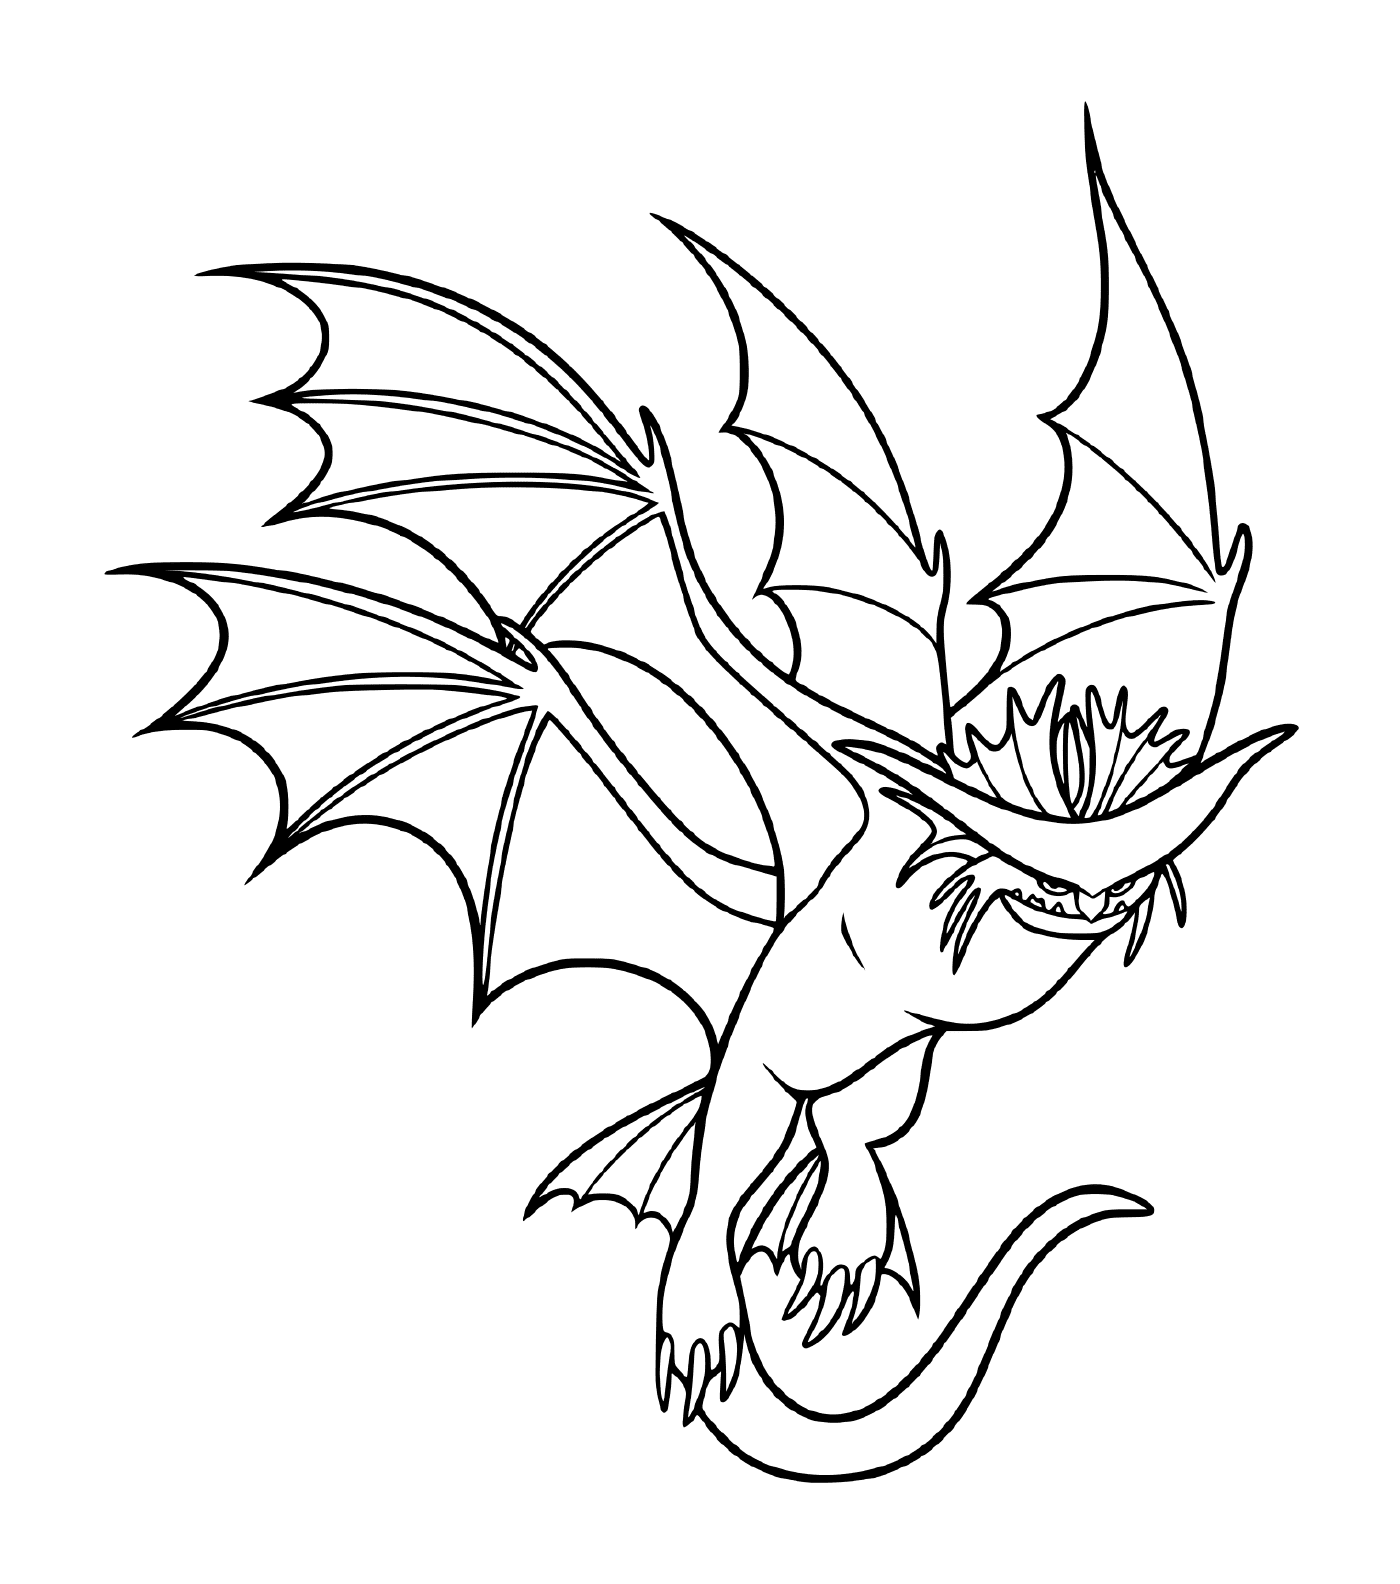  Cloudjumper, un dragón con alas desplegadas 